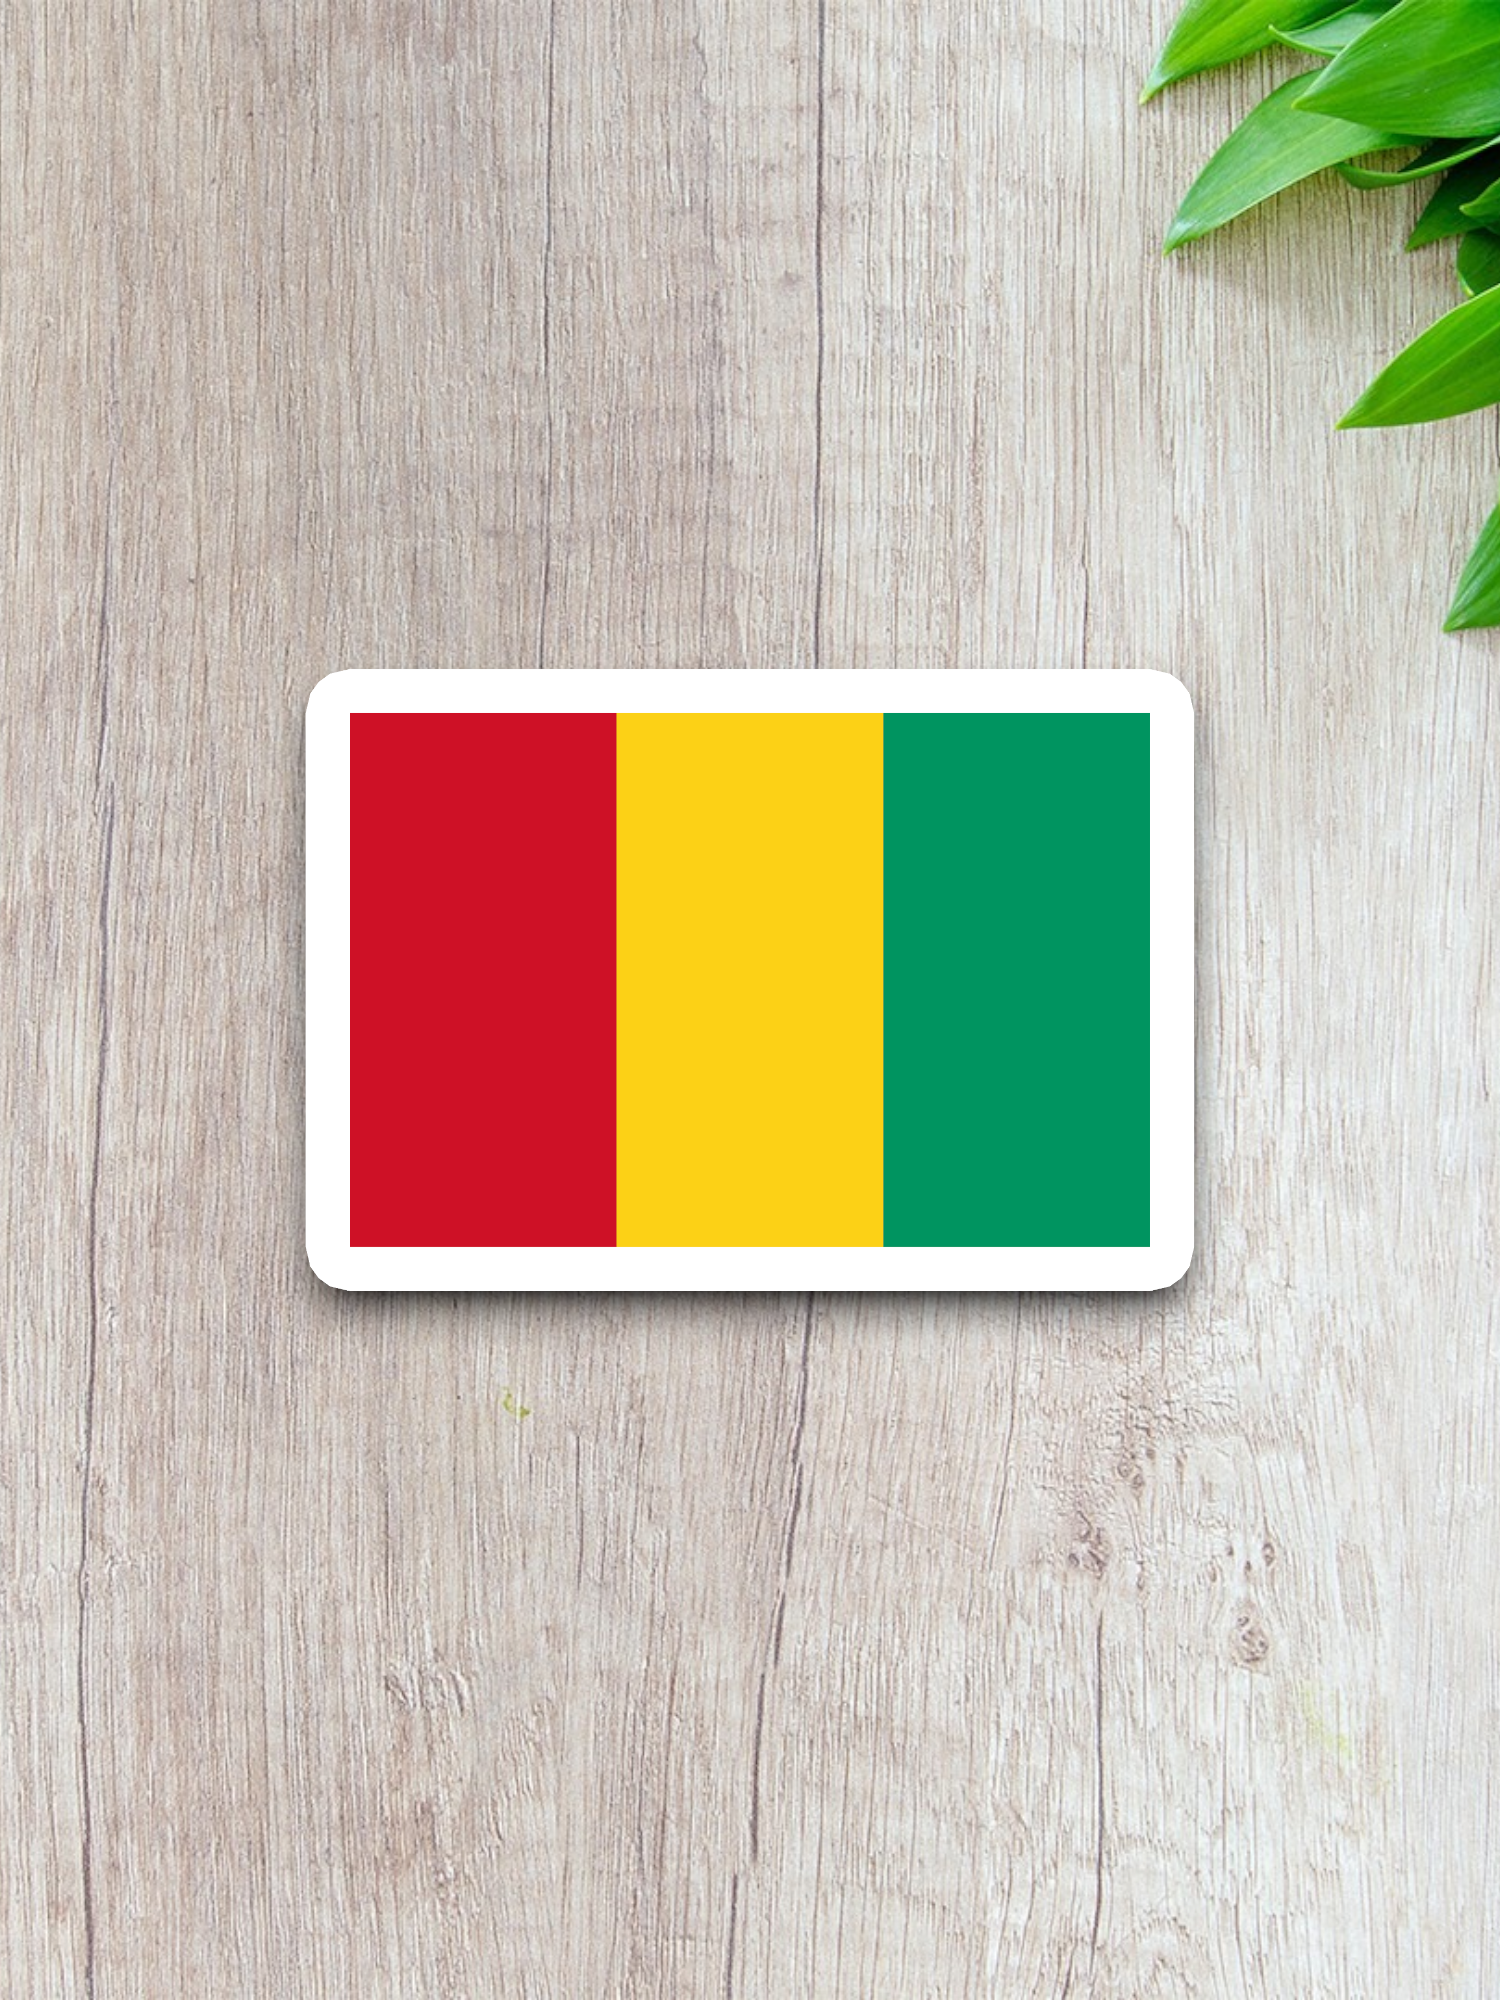 Guinea Flag - International Country Flag Sticker